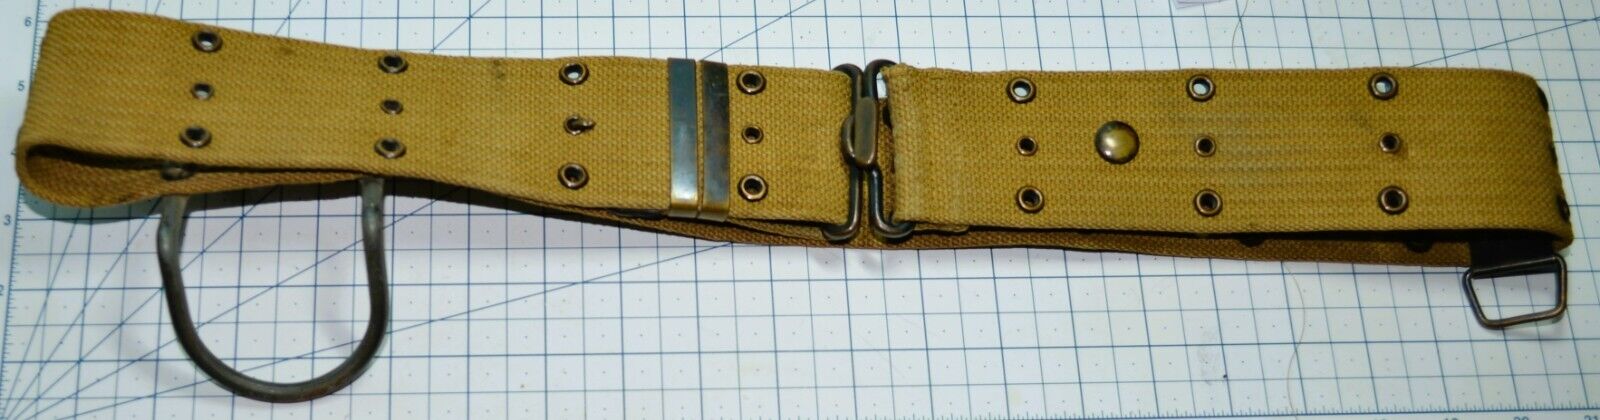 US Army Belt Pistol Web Mills Woven Cartridge Belt Co WWI WW2 Pat 1901/1907